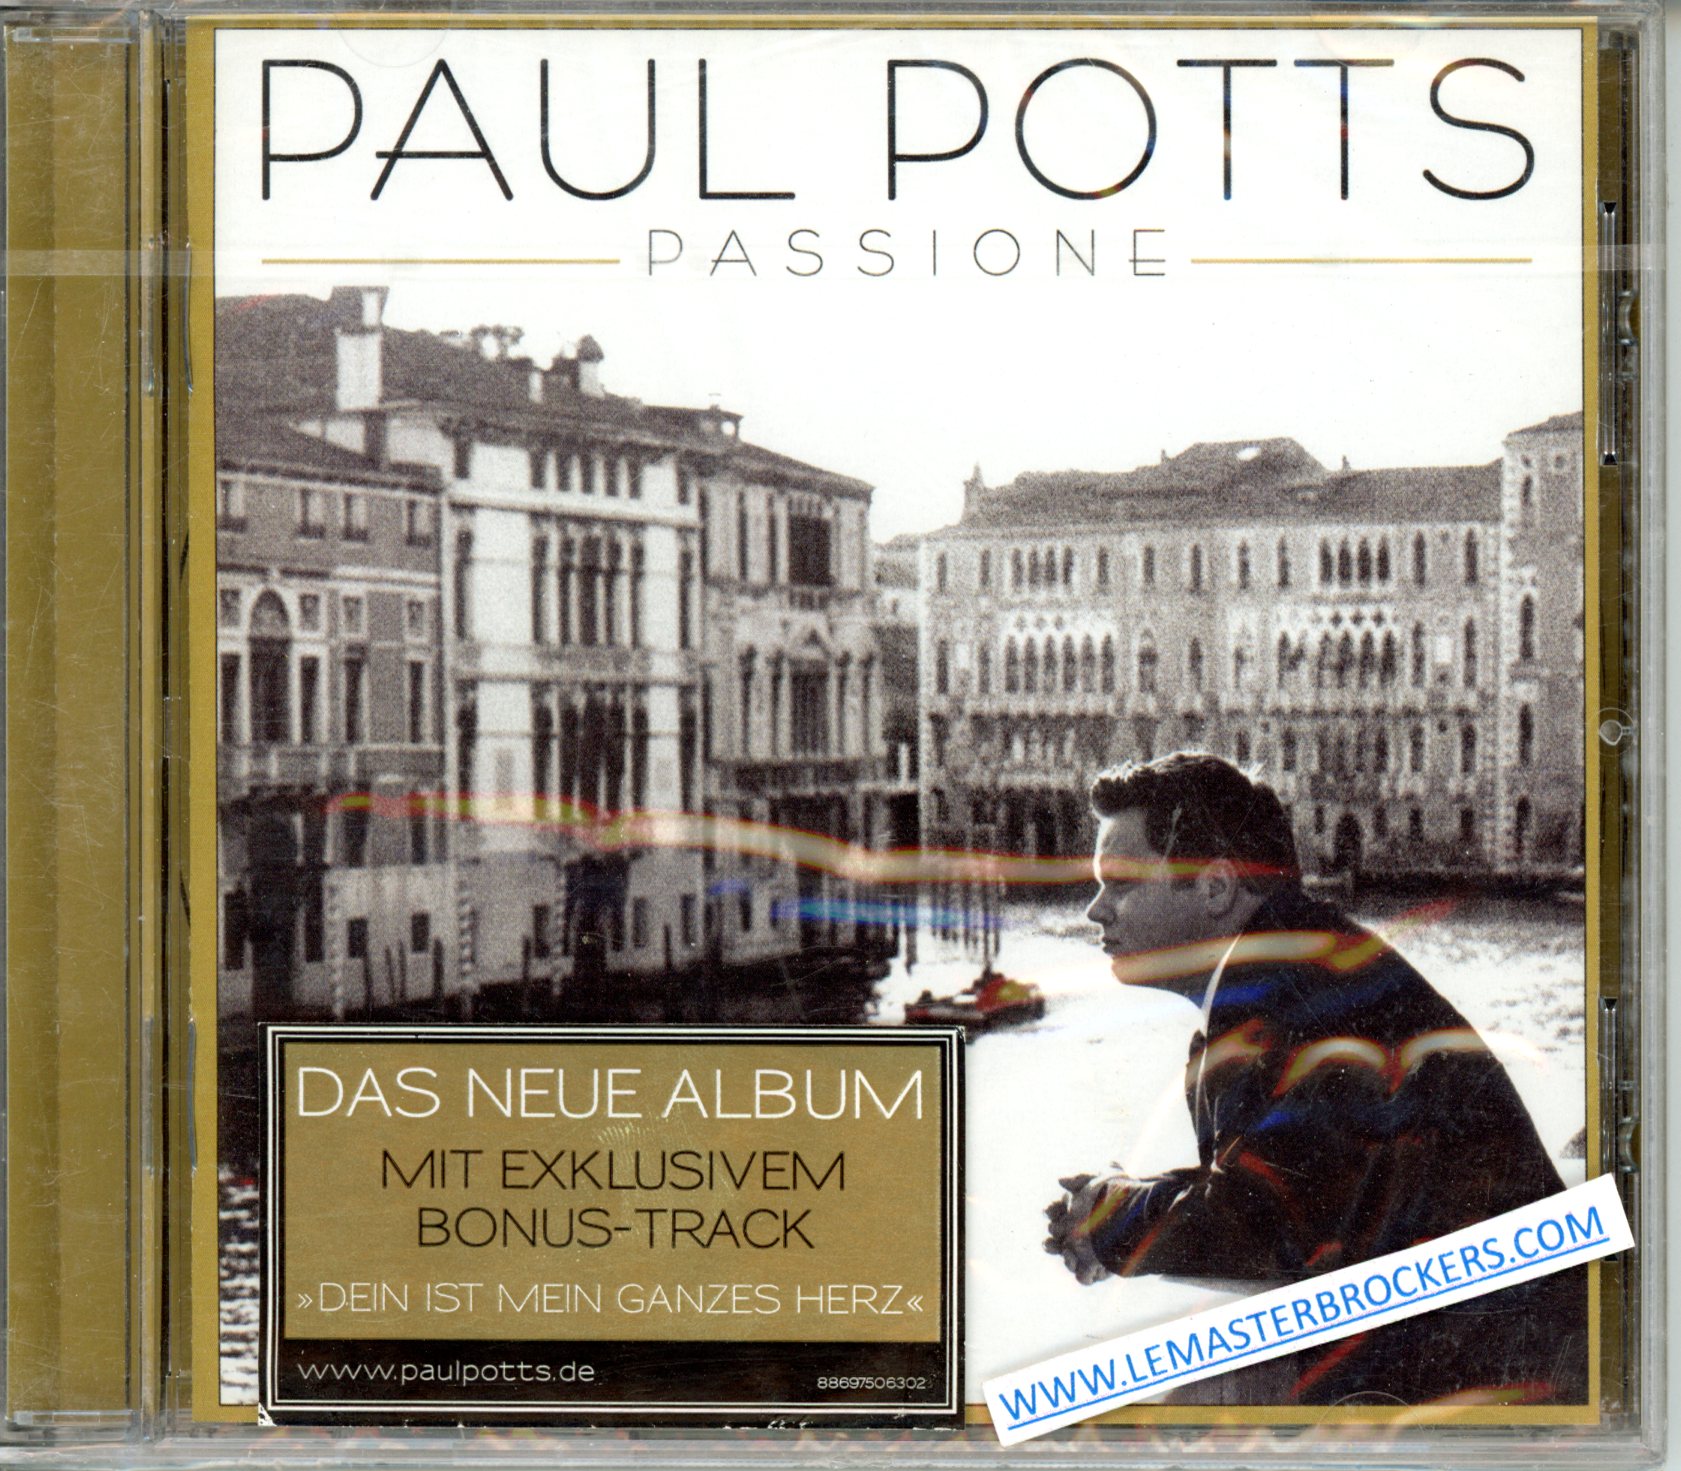 ALBUM PAUL POTTS PASSIONE